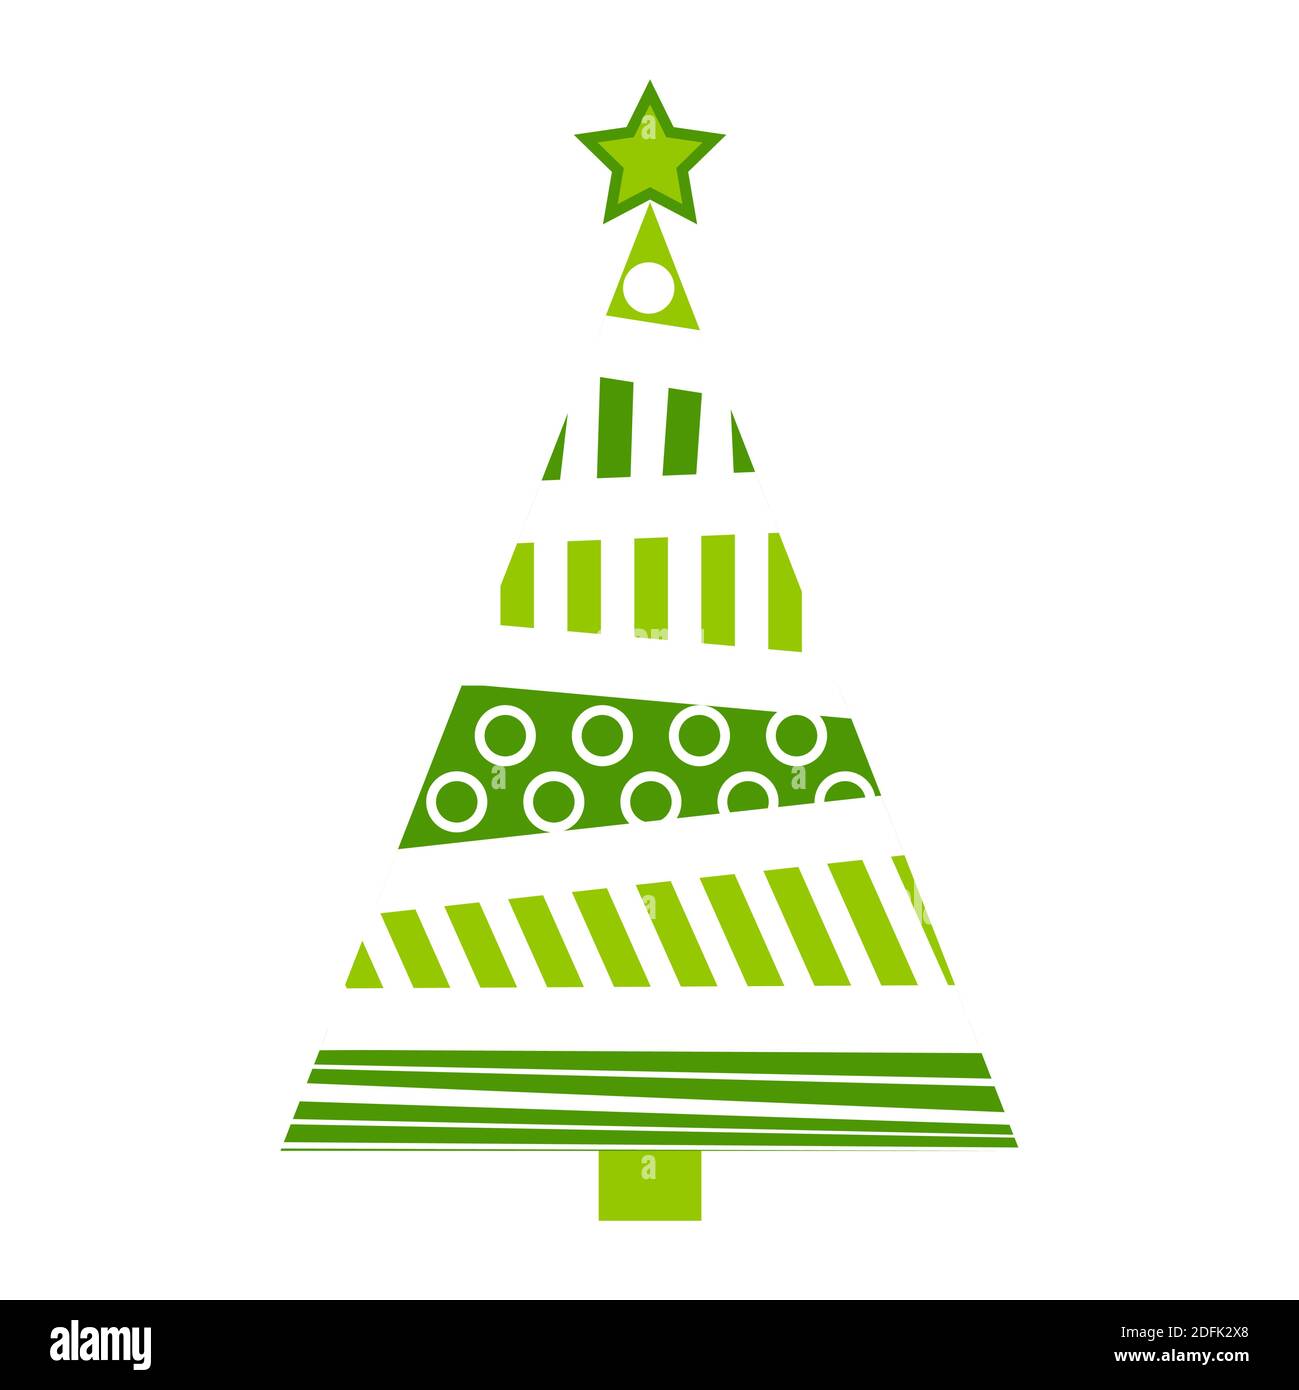 Weihnachtsbaum abstrakte Illustration. Grüner Tannenbaum für Weihnachten aus Balken und Kreisen. Einfaches Urlaubssymbol mit geometrischen Formen. Vektorsymbol i Stock Vektor